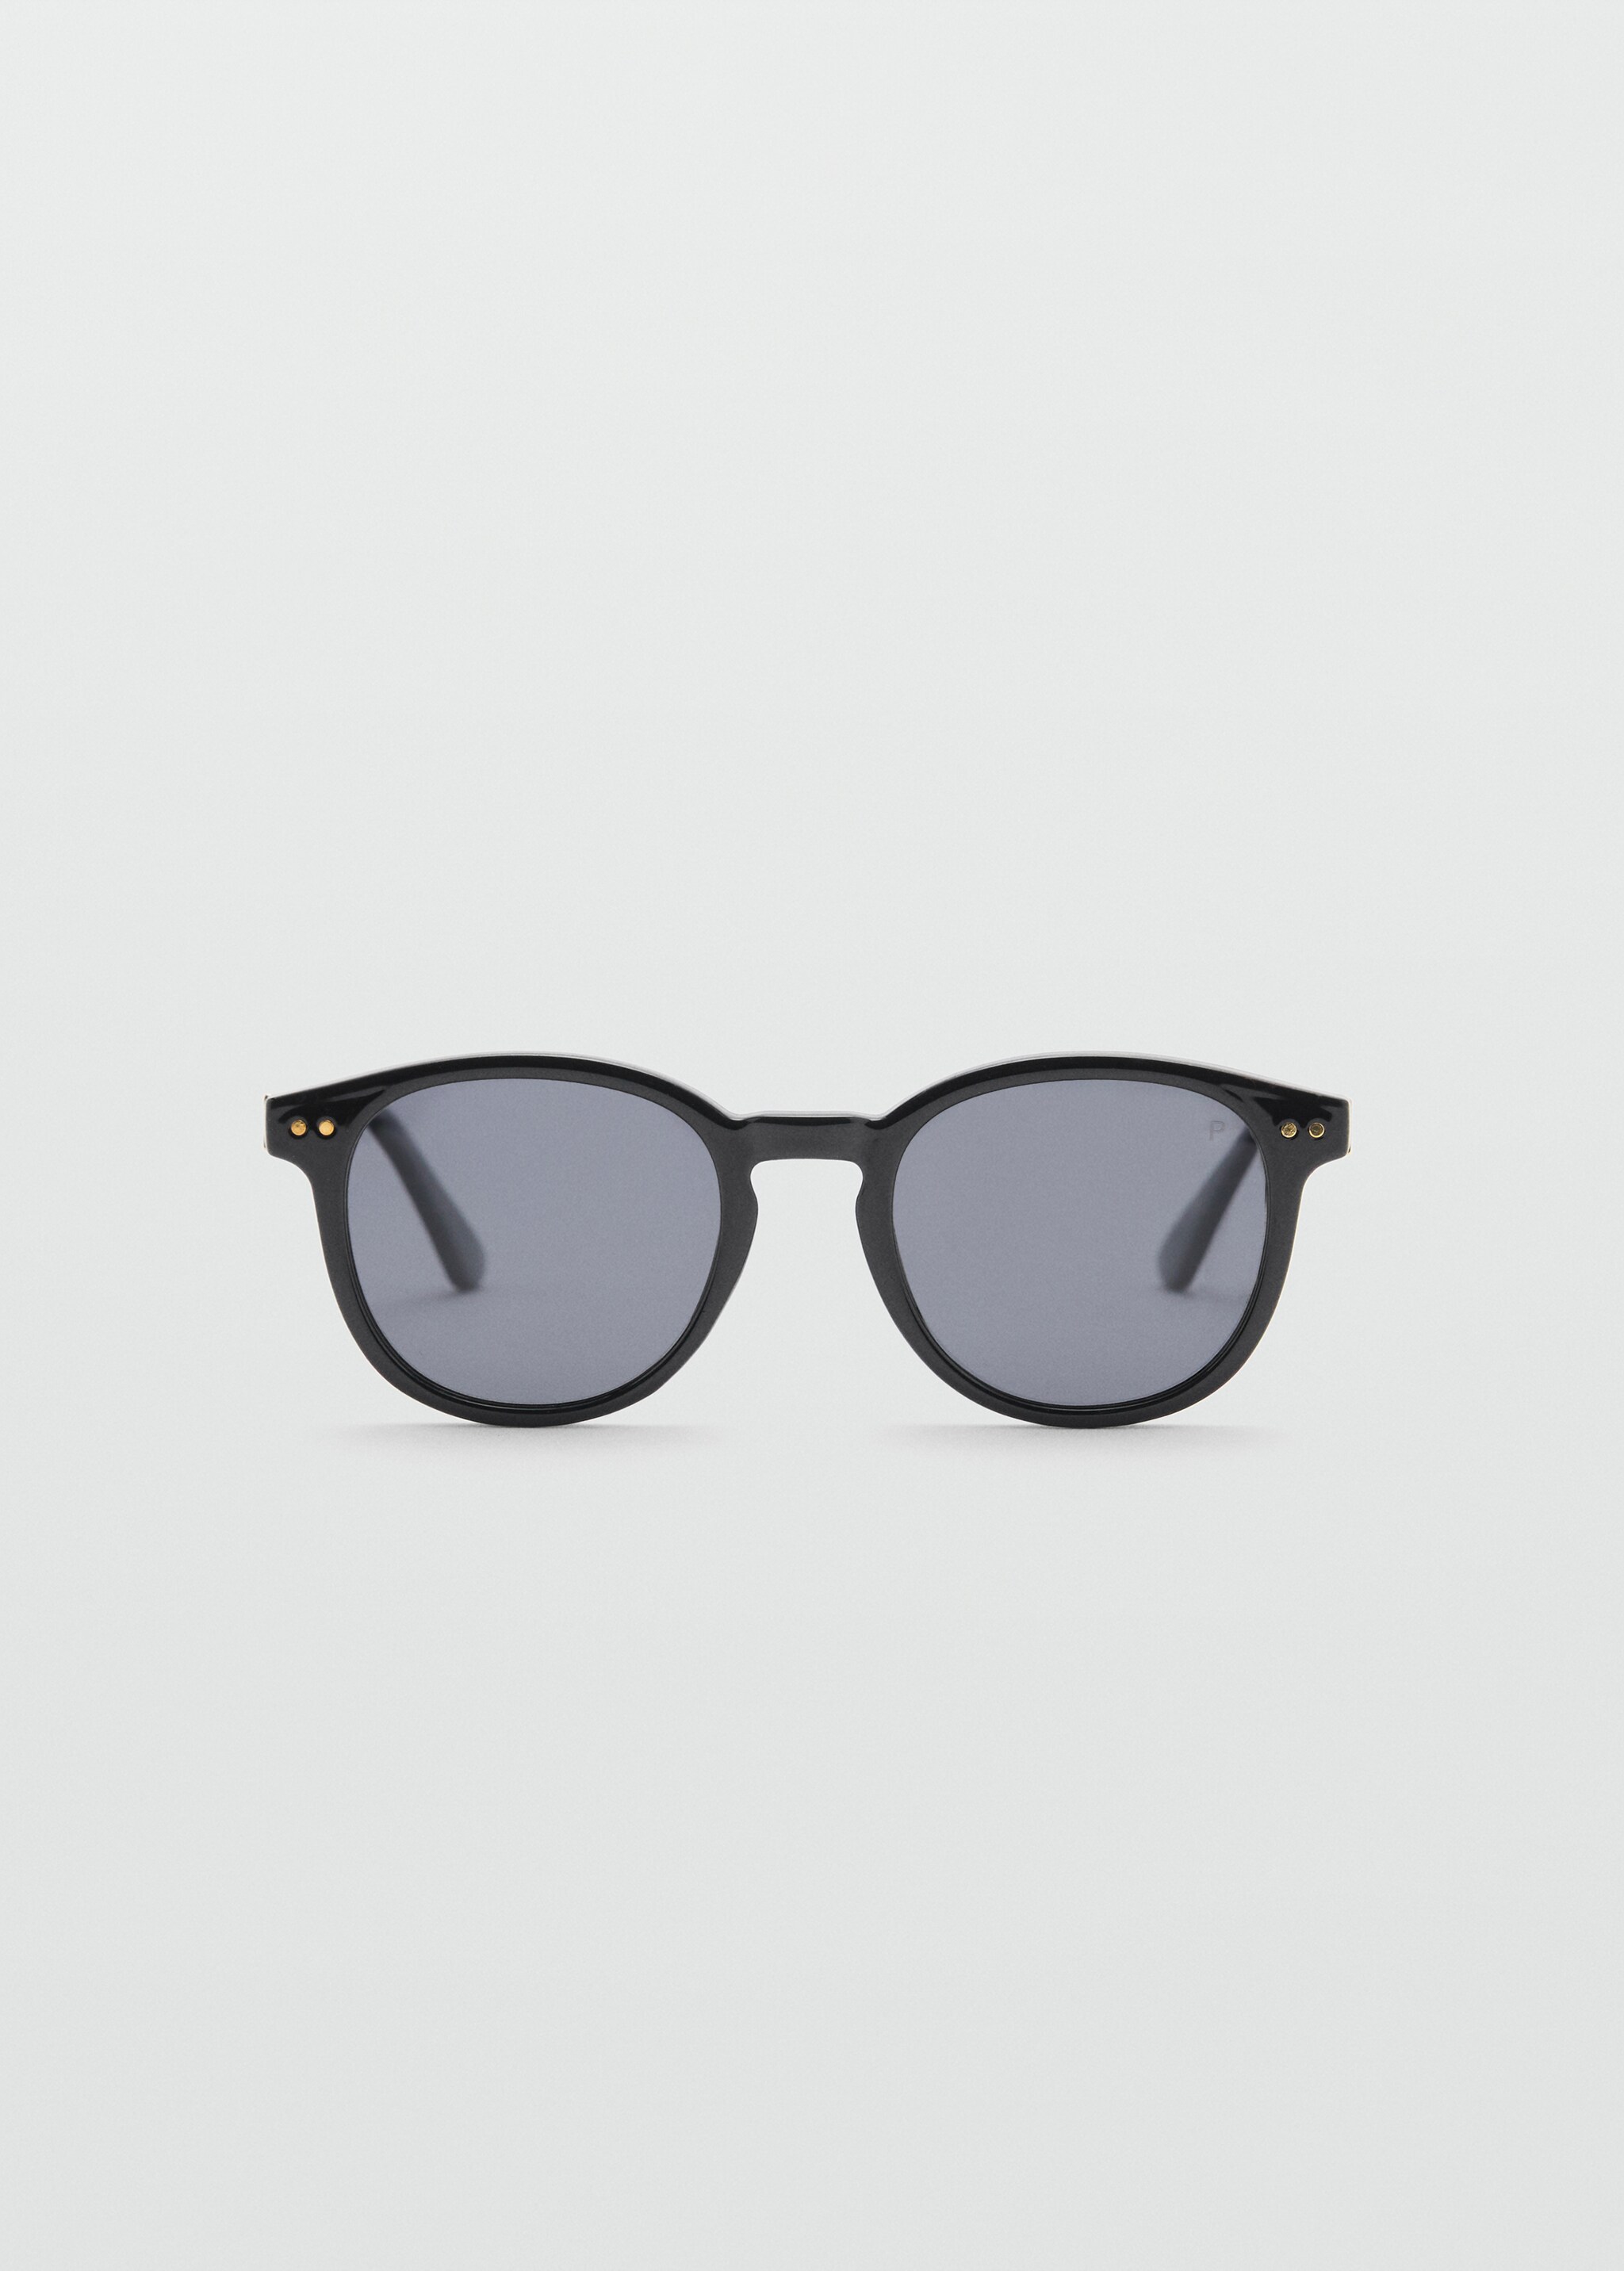 Oculos de sol porter - Artigo sem modelo